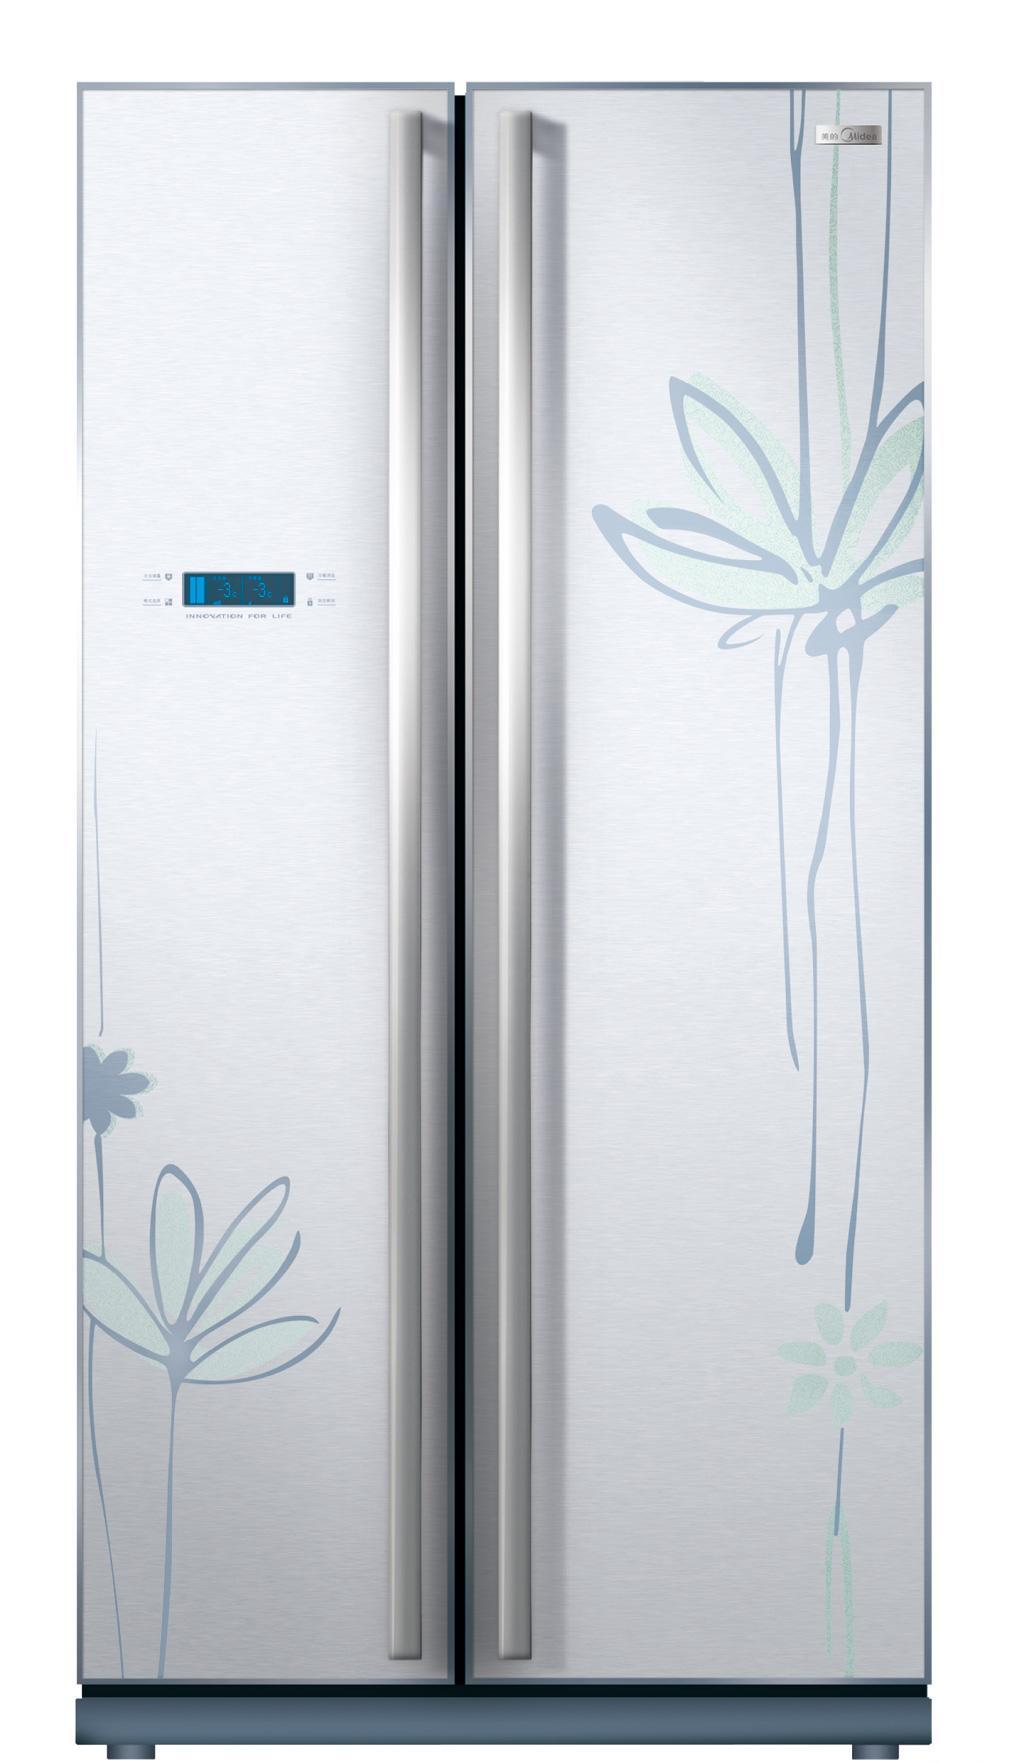 美的BCD-556WKGM冰箱产品价格_图片_报价